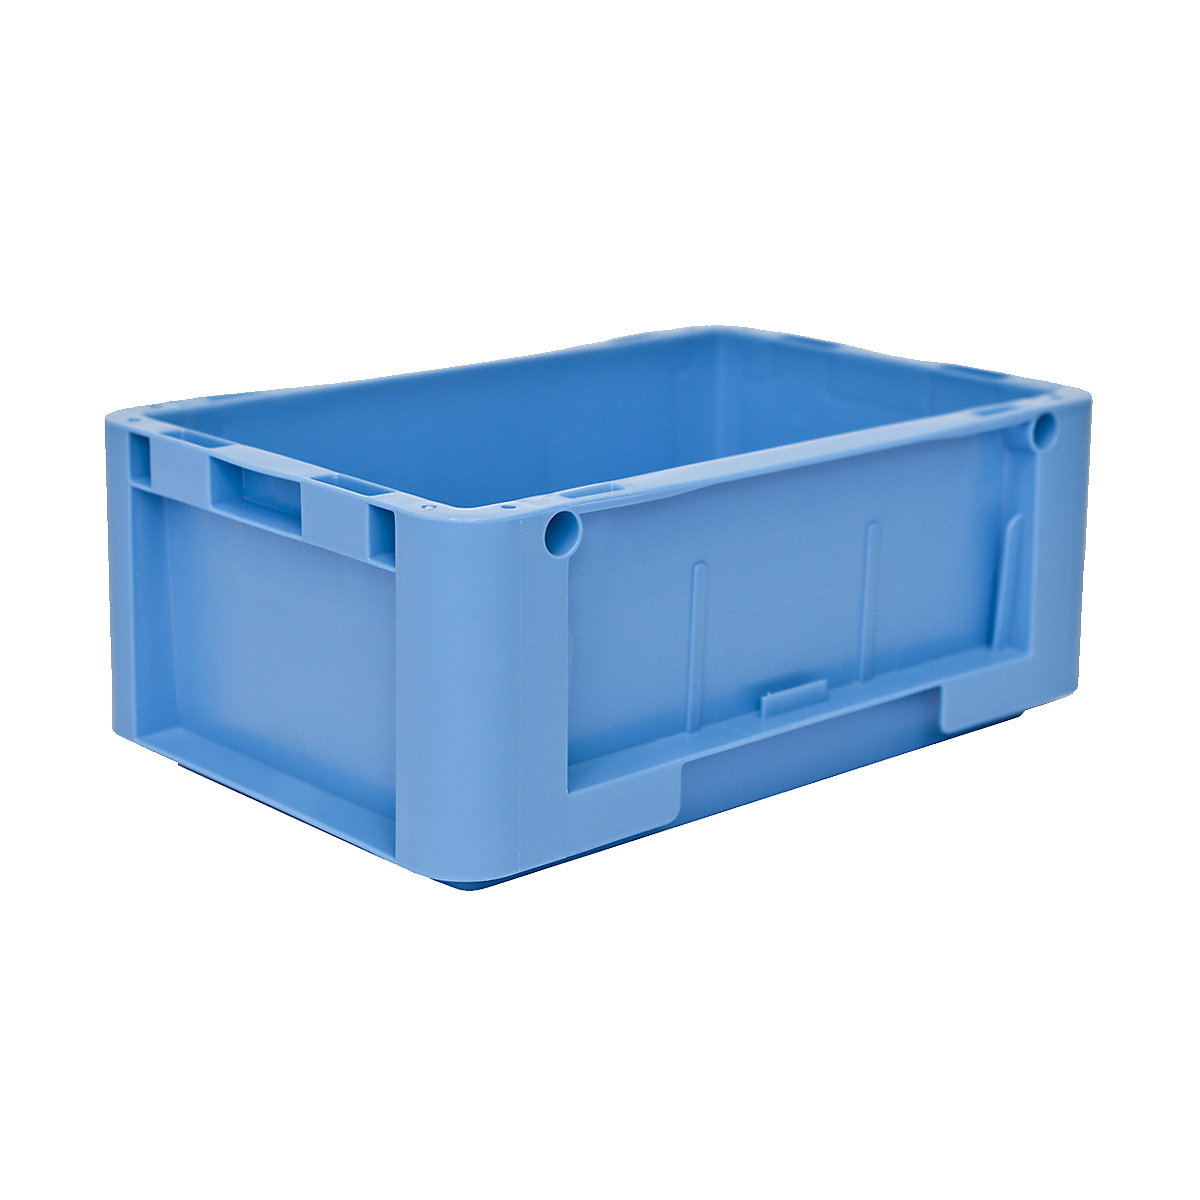 Euronorm-Stapelbehälter, Außen-LxBxH 300 x 200 x 120 mm, blau, VE 12 Stk